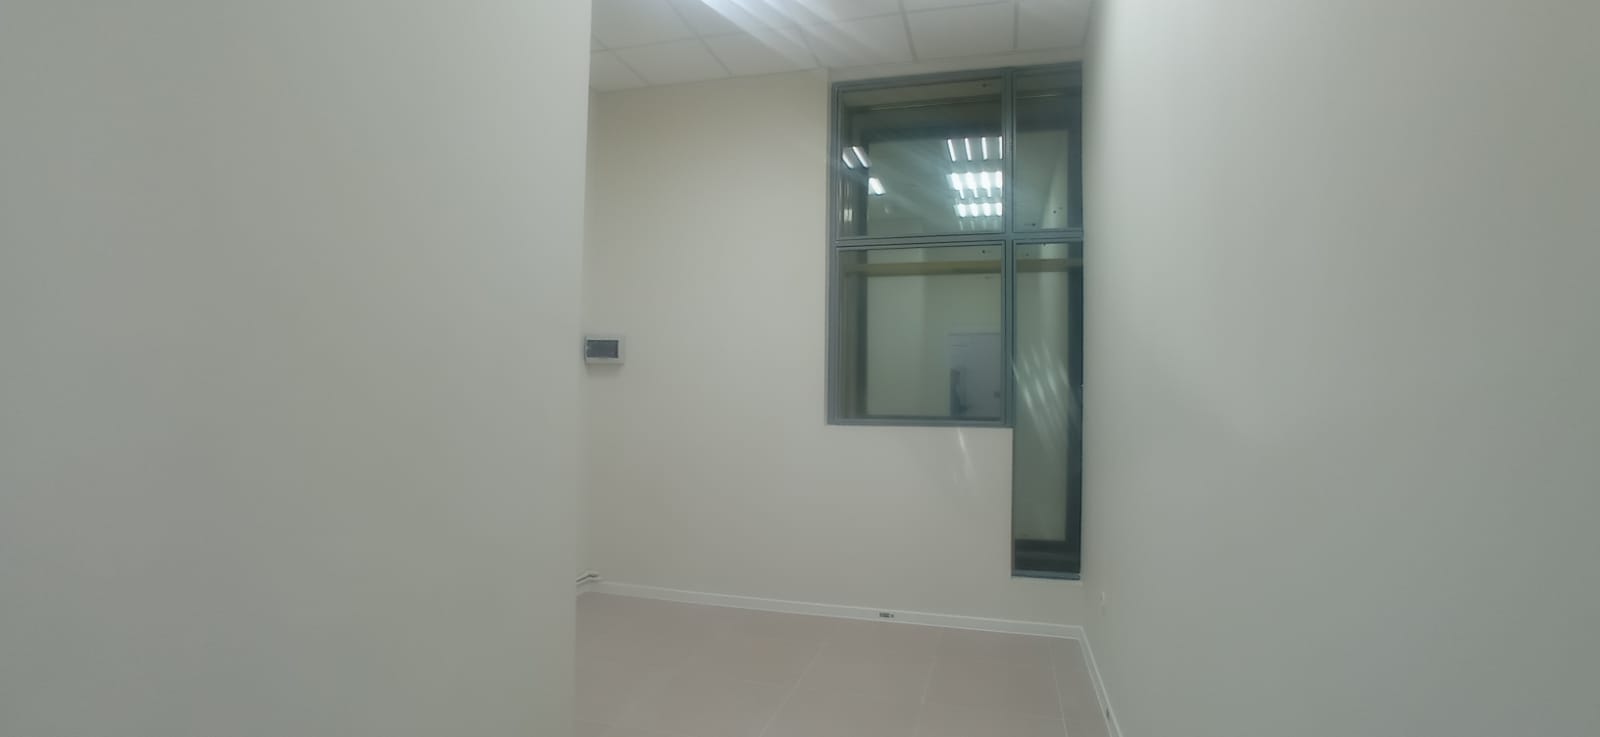 Предлагаем к аренде офисное помещение в офисном центре площадь 14,5 м² на 2 этаже, напрямую от собственника._10